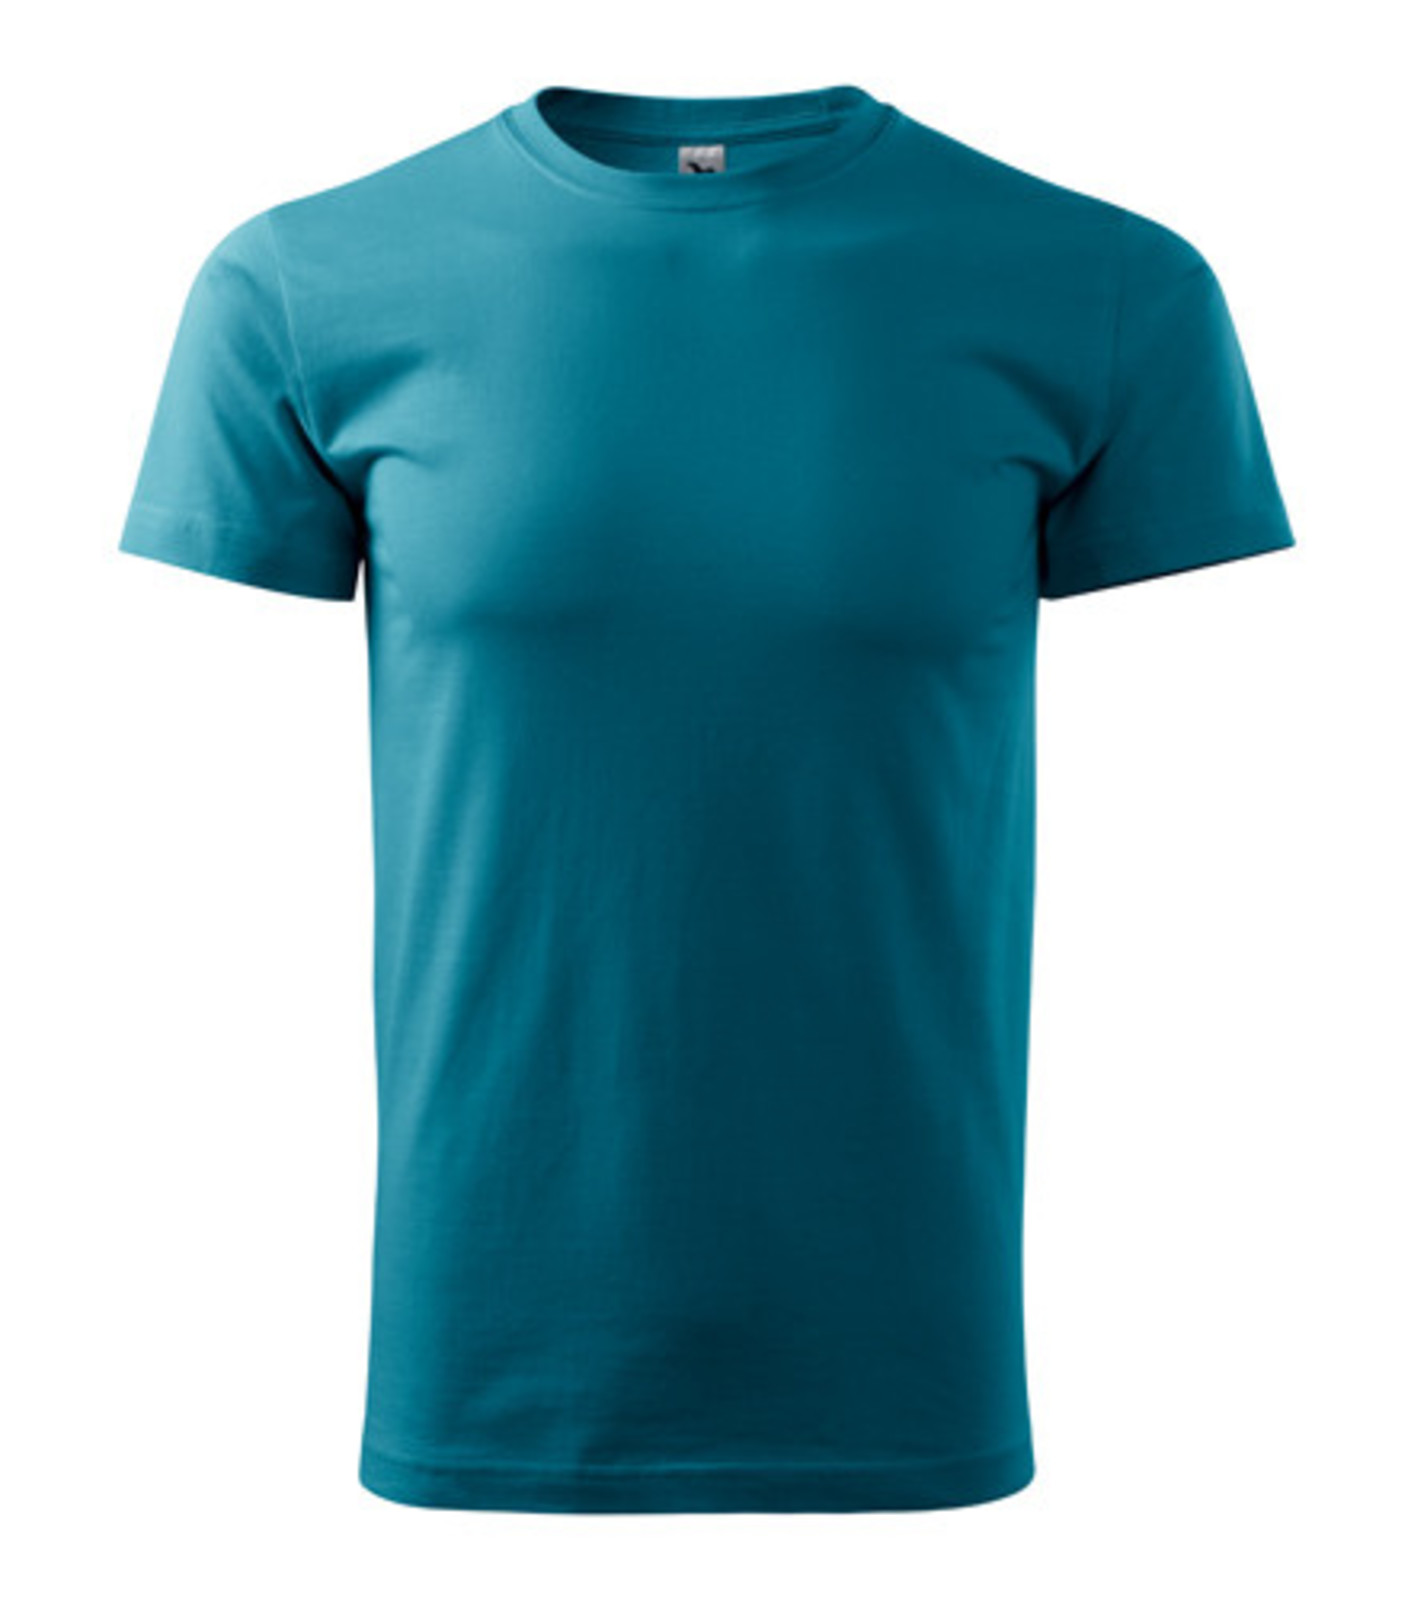 Unisex tričko Malfini Heavy New 137 - veľkosť: M, farba: tm. tyrkys